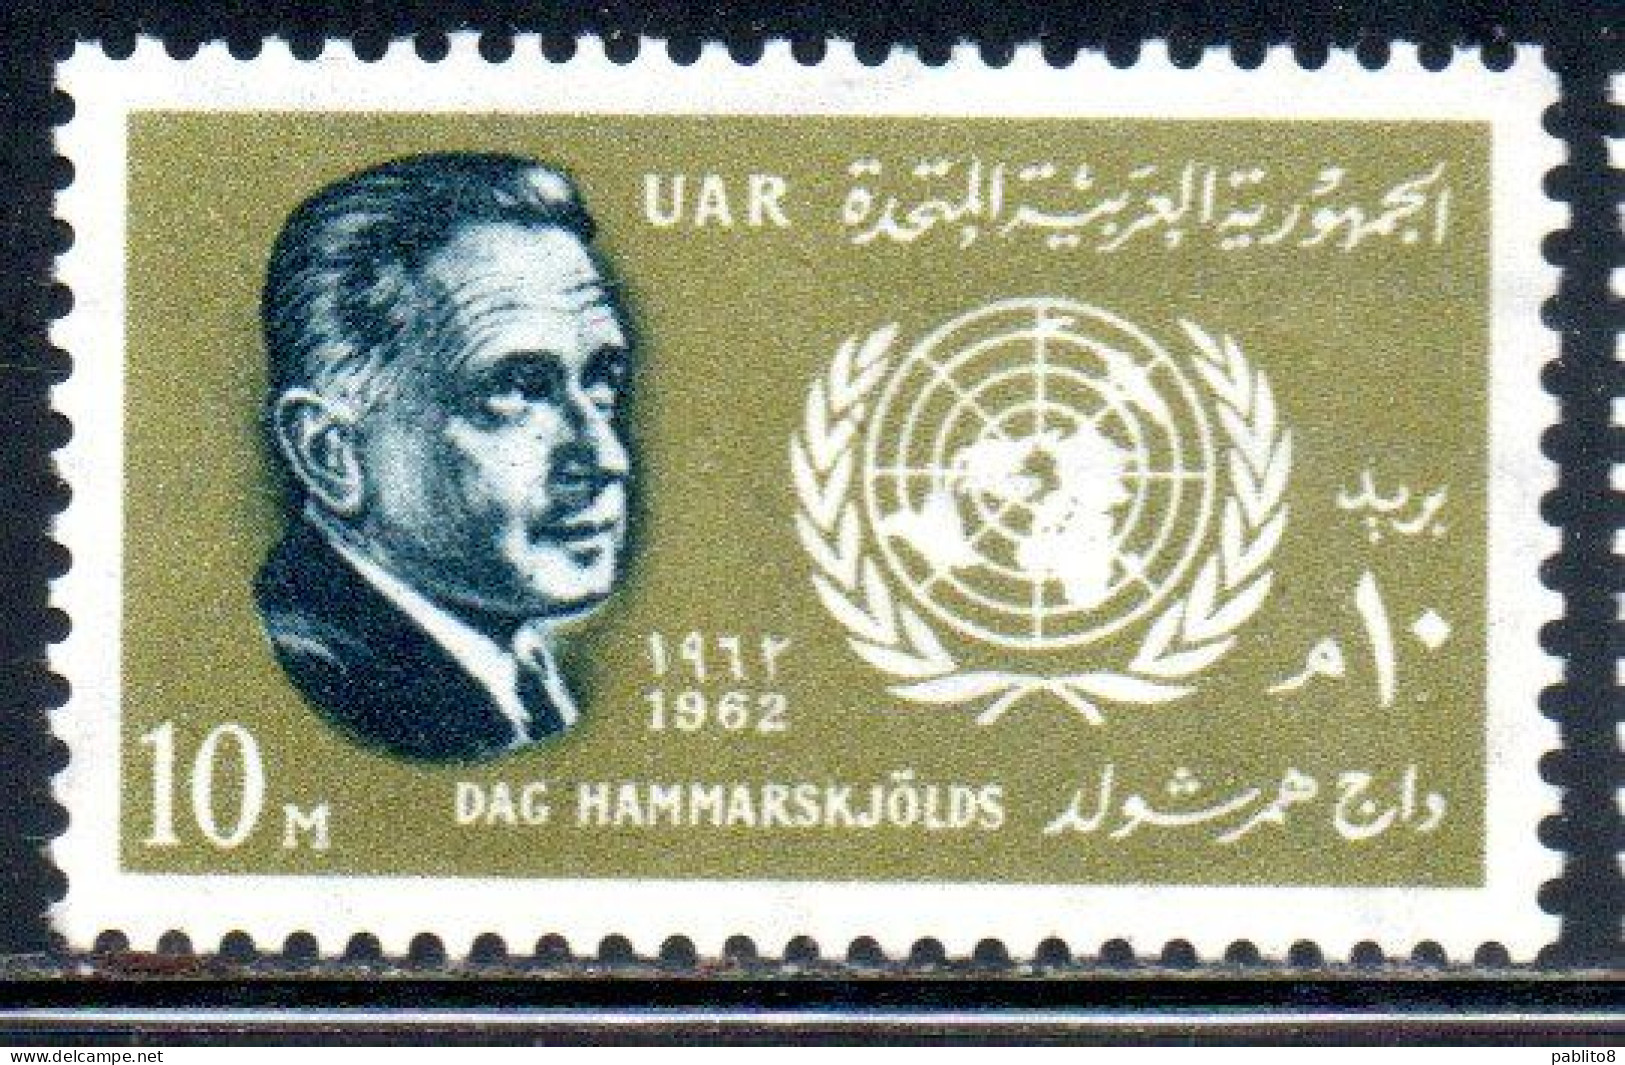 UAR EGYPT EGITTO 1962 DAG HAMMARSKJOLD SECRETARY GENERAL OF THE UN ONU 10m MNH - Ungebraucht